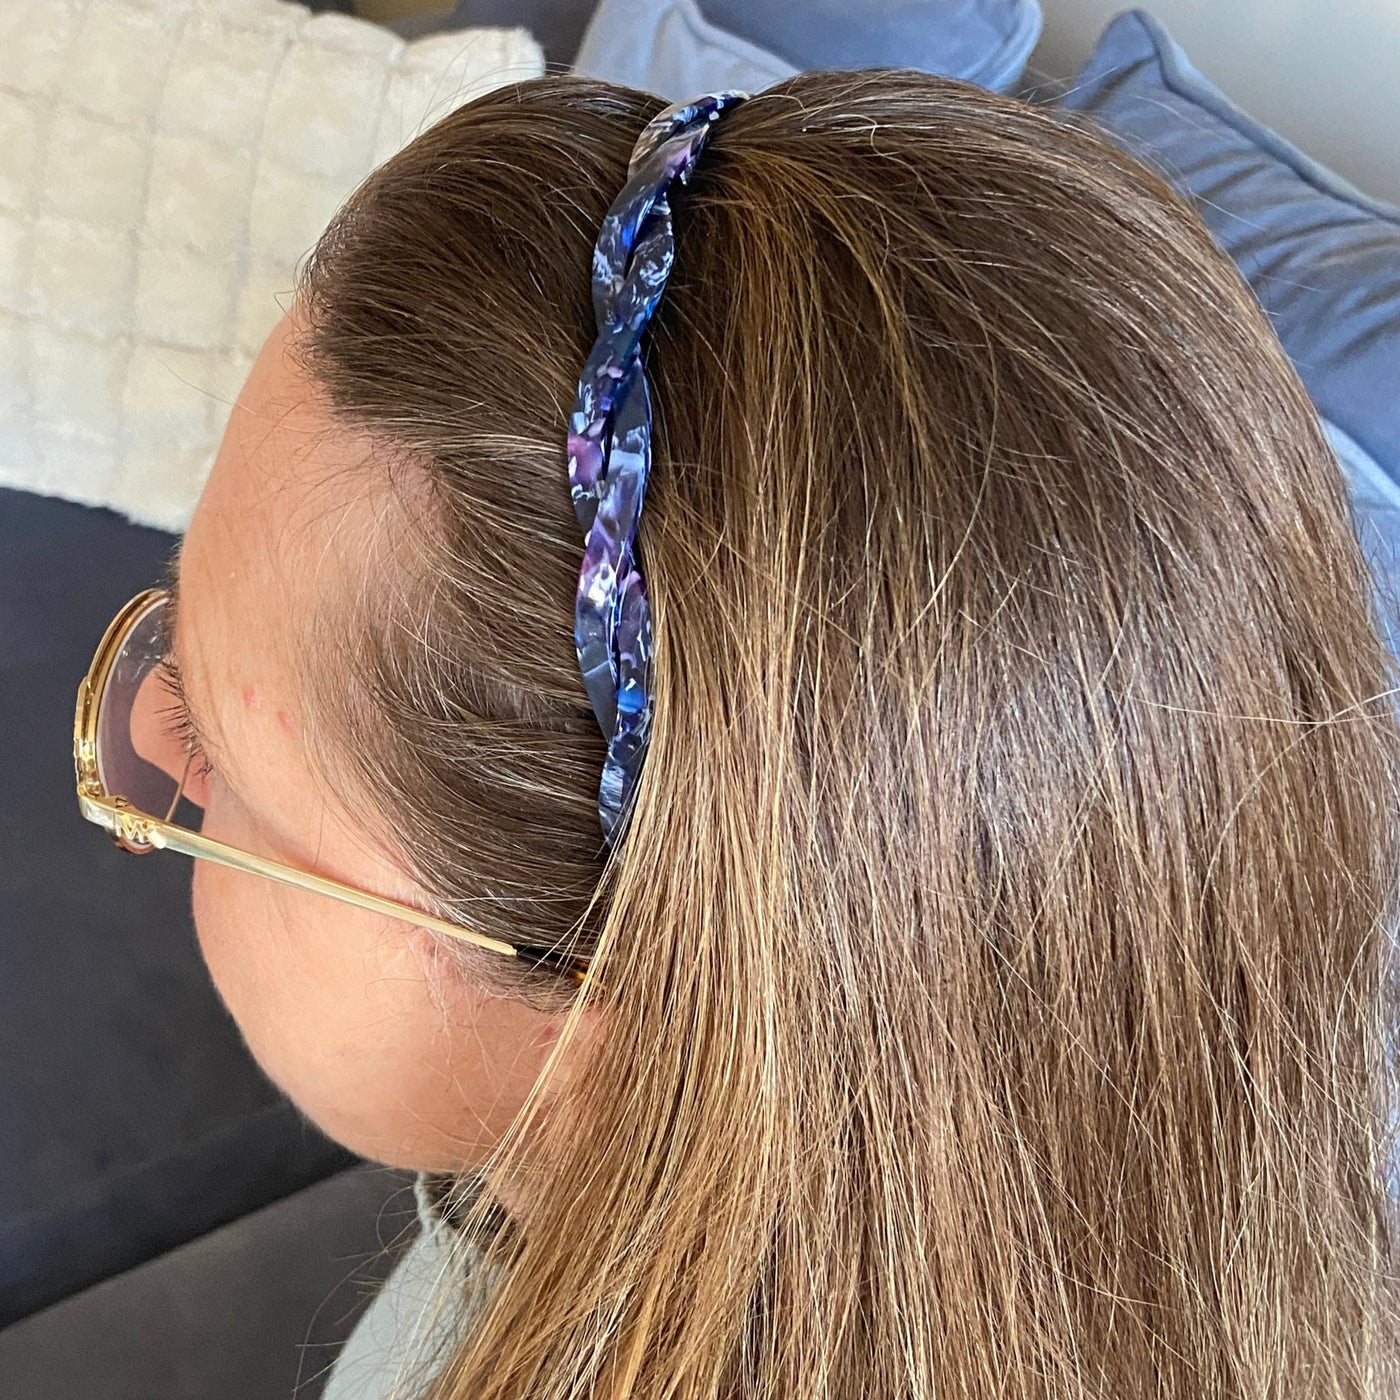 Udforsk hårbøjler - Alberte blå hårbøjle fra Orphic Style – en elegant hårbøjle der ikke gør ondt bag ørerne - hårbøjler der ikke klemmer